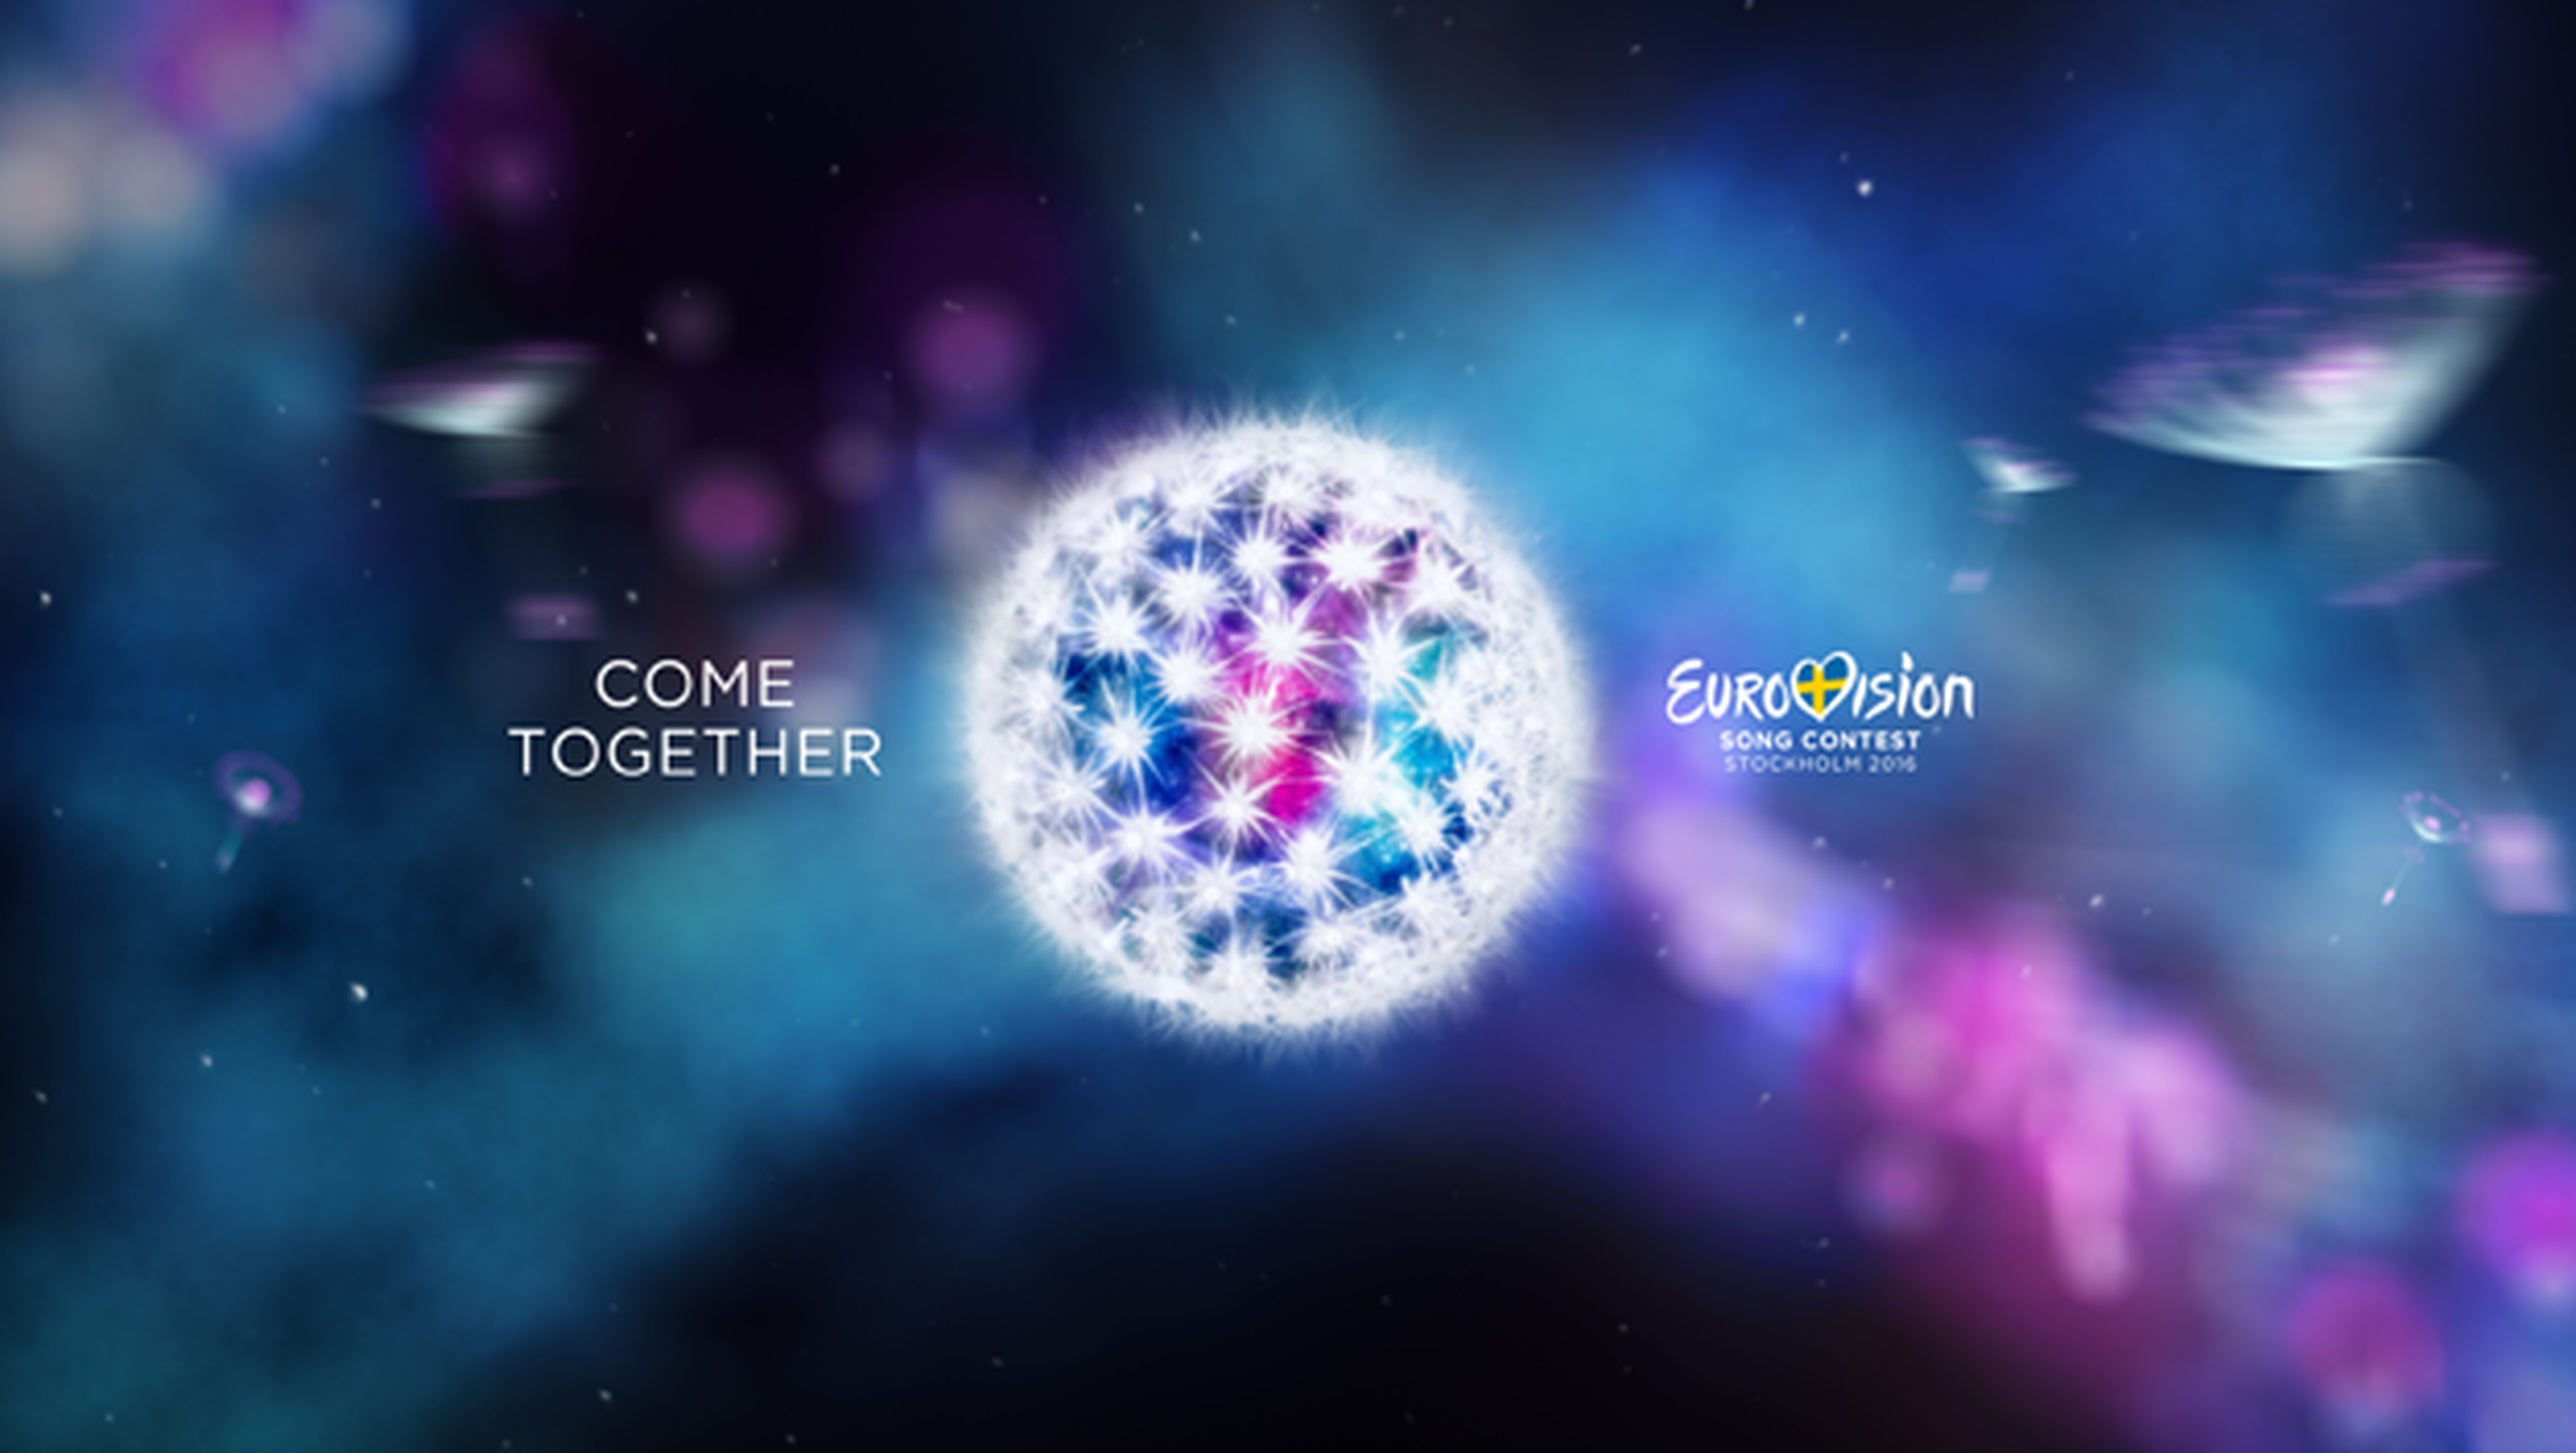 ganadores eurovision 2016 bing, ganadores eurovision, quien ganara eurovision, favoritos eurovision